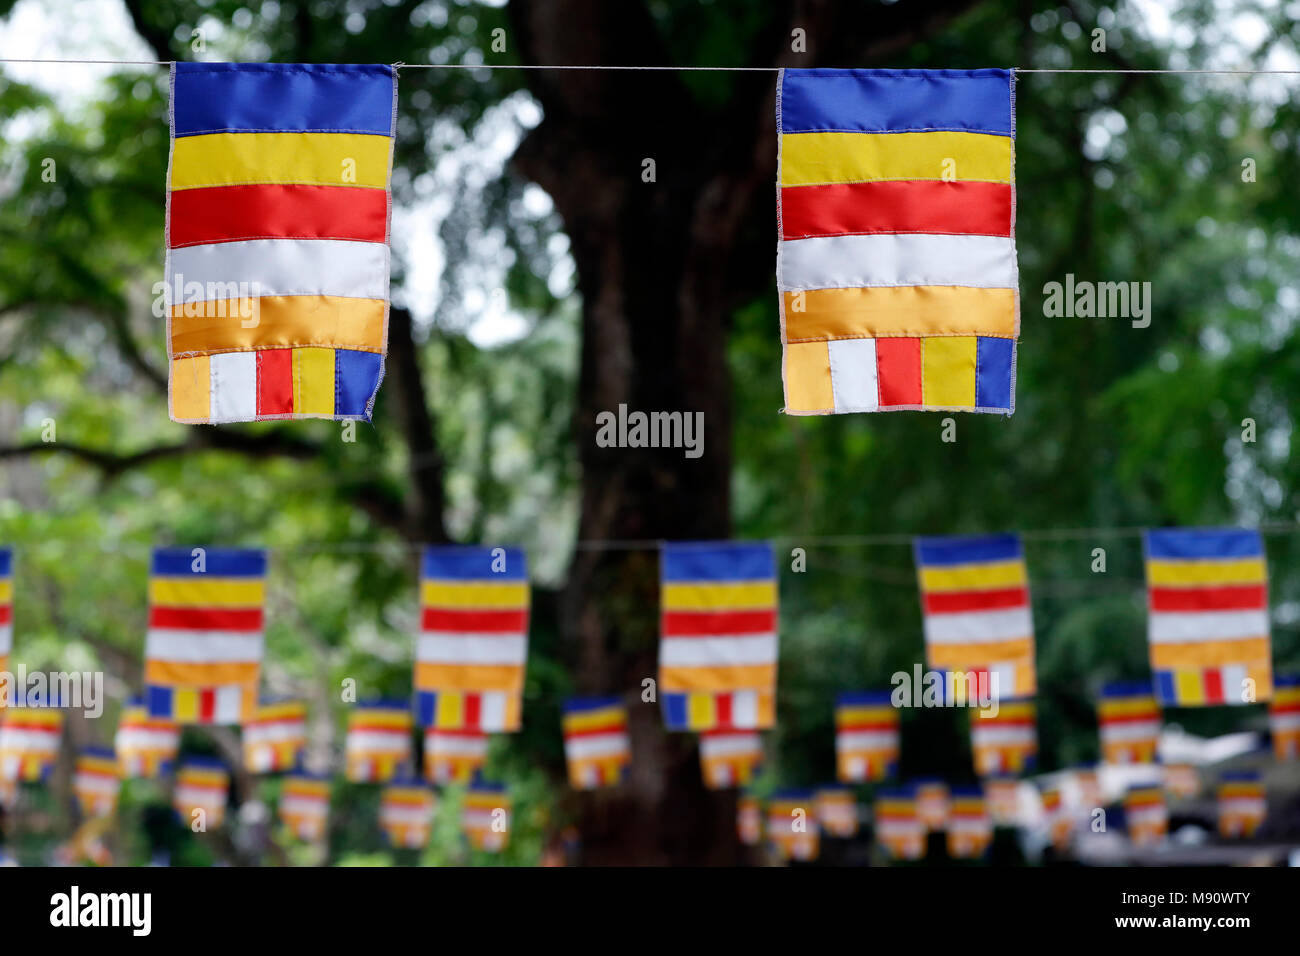 Die Buddhistische Flagge ist ein Flag im späten 19. Jahrhundert entworfen, um zu symbolisieren, und universell Buddhismus dar. Hanoi. Vietnam. Stockfoto